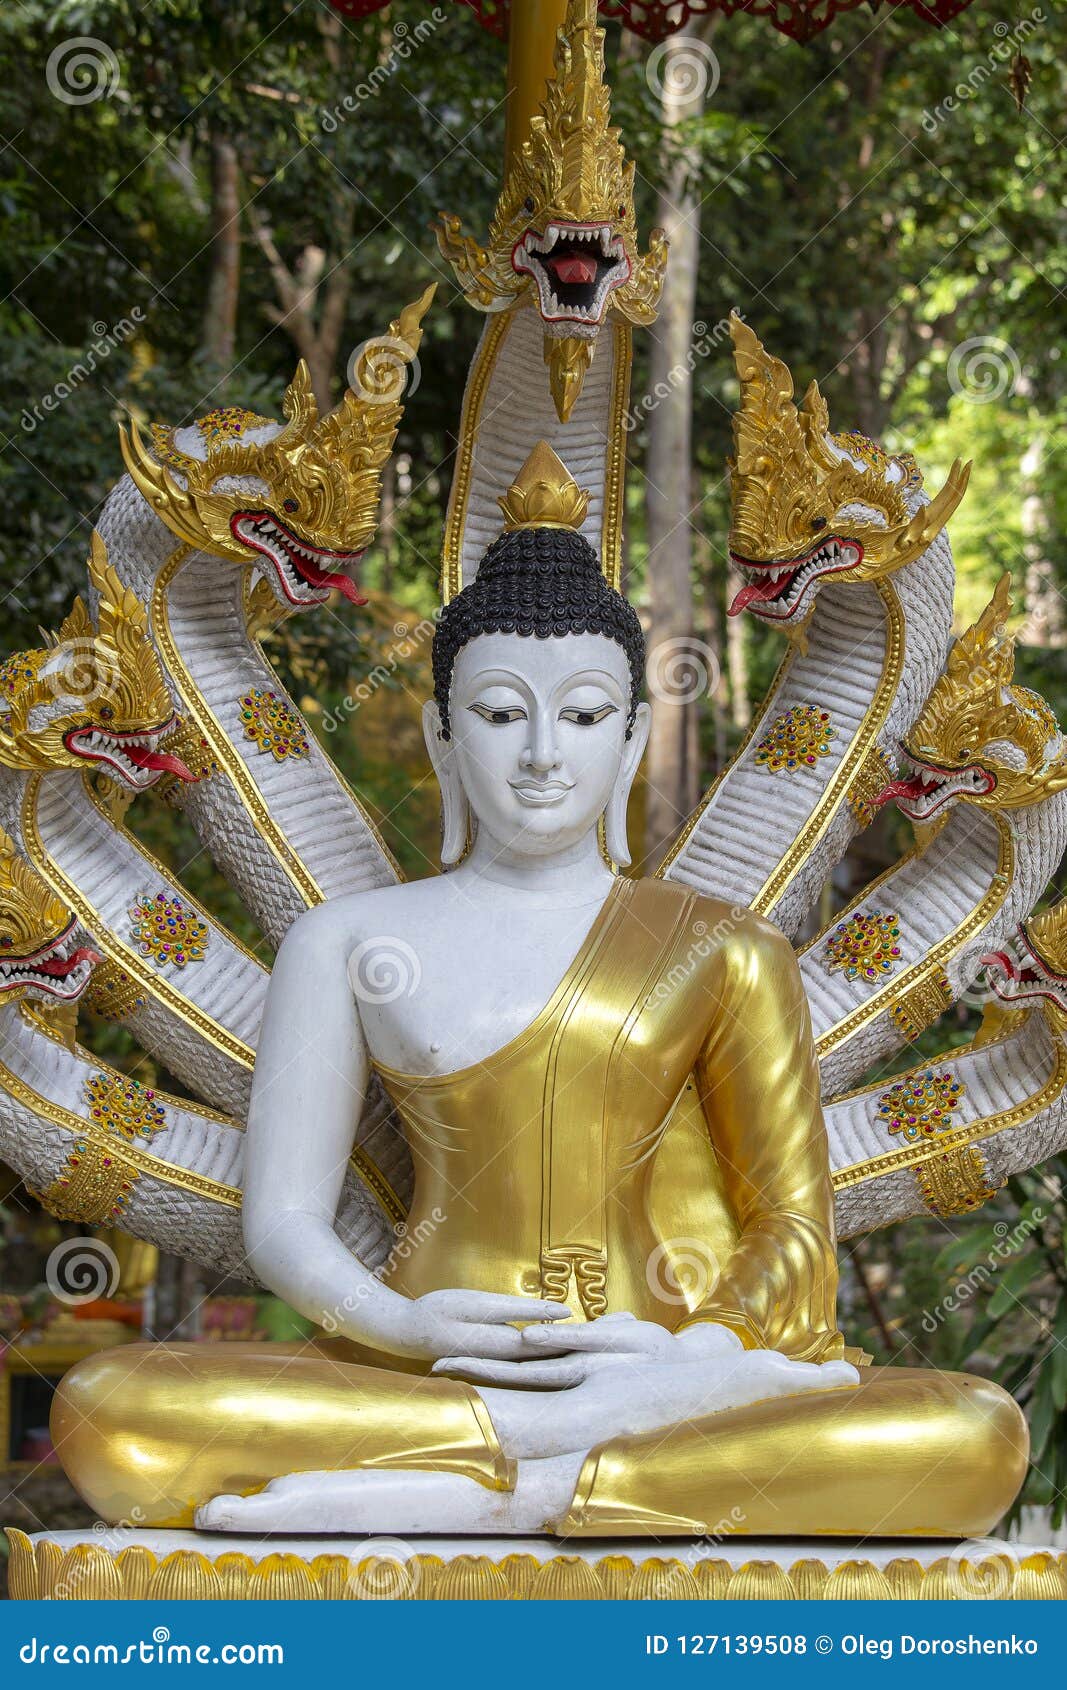 Beautiful Buddha Statue with Naga Heads at Buddhist Temple ...